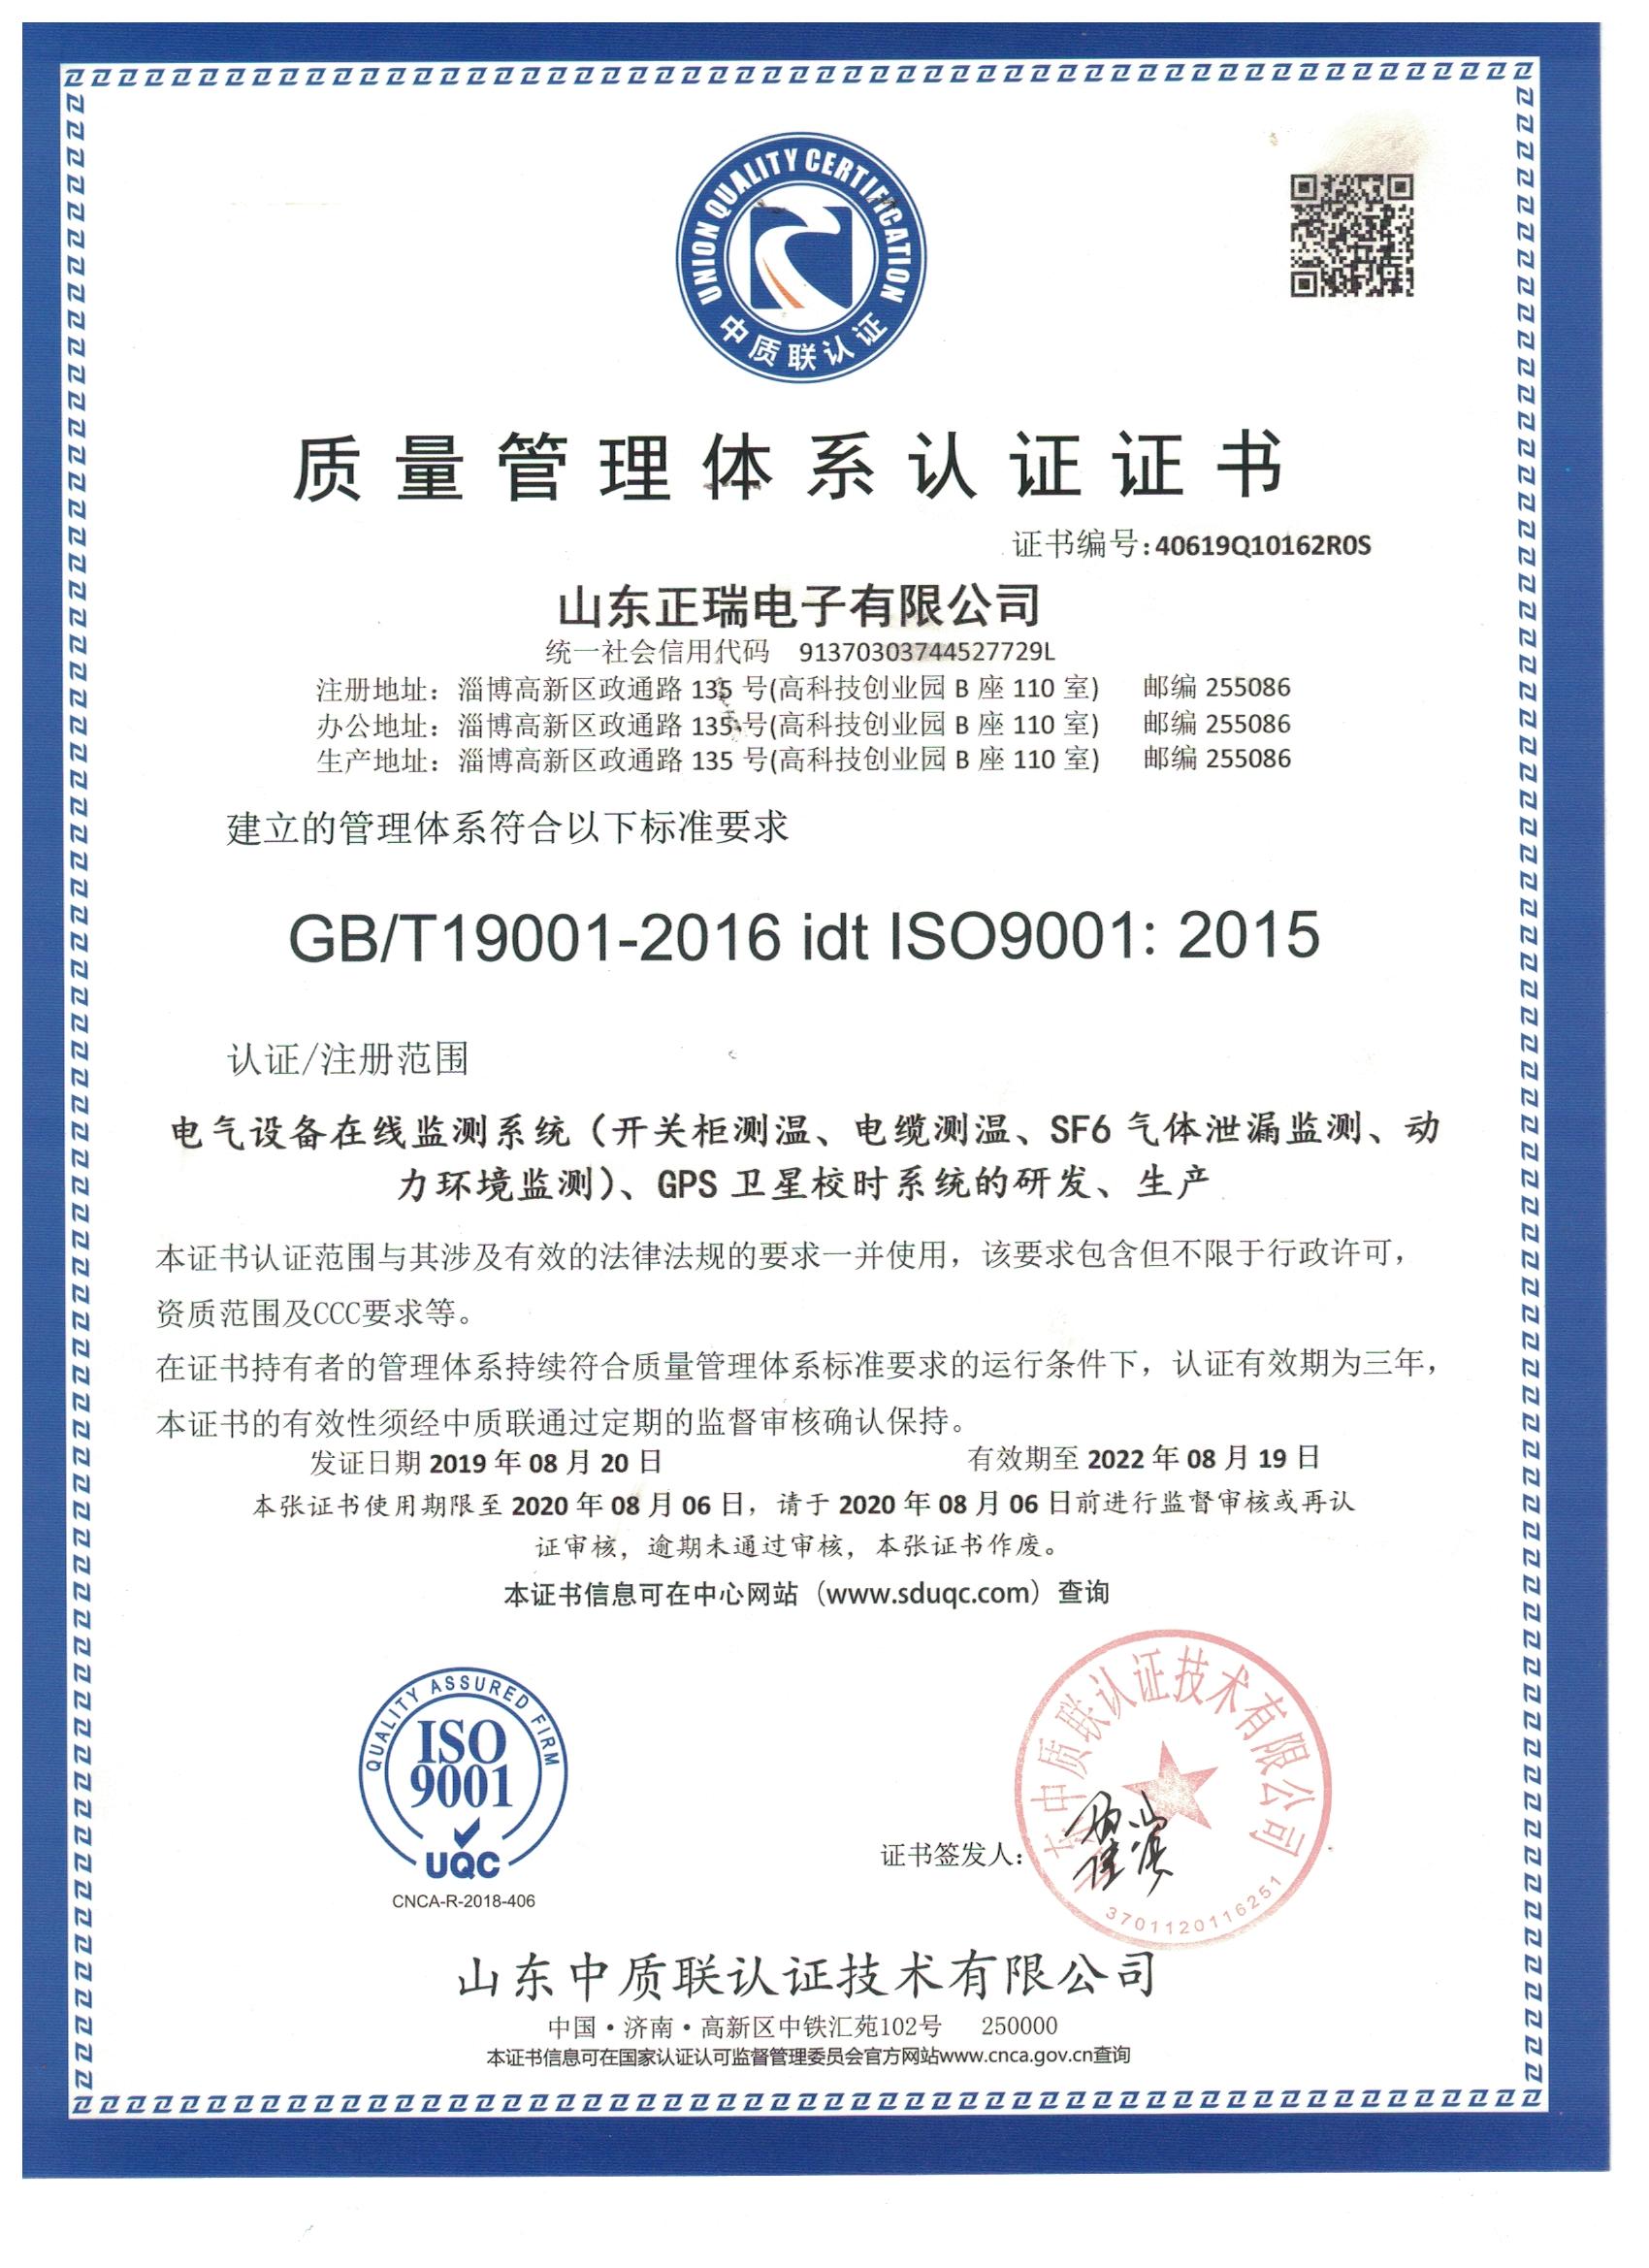 山东正瑞电子有限公司公司通过了2019年 ISO9001:2015 的认证